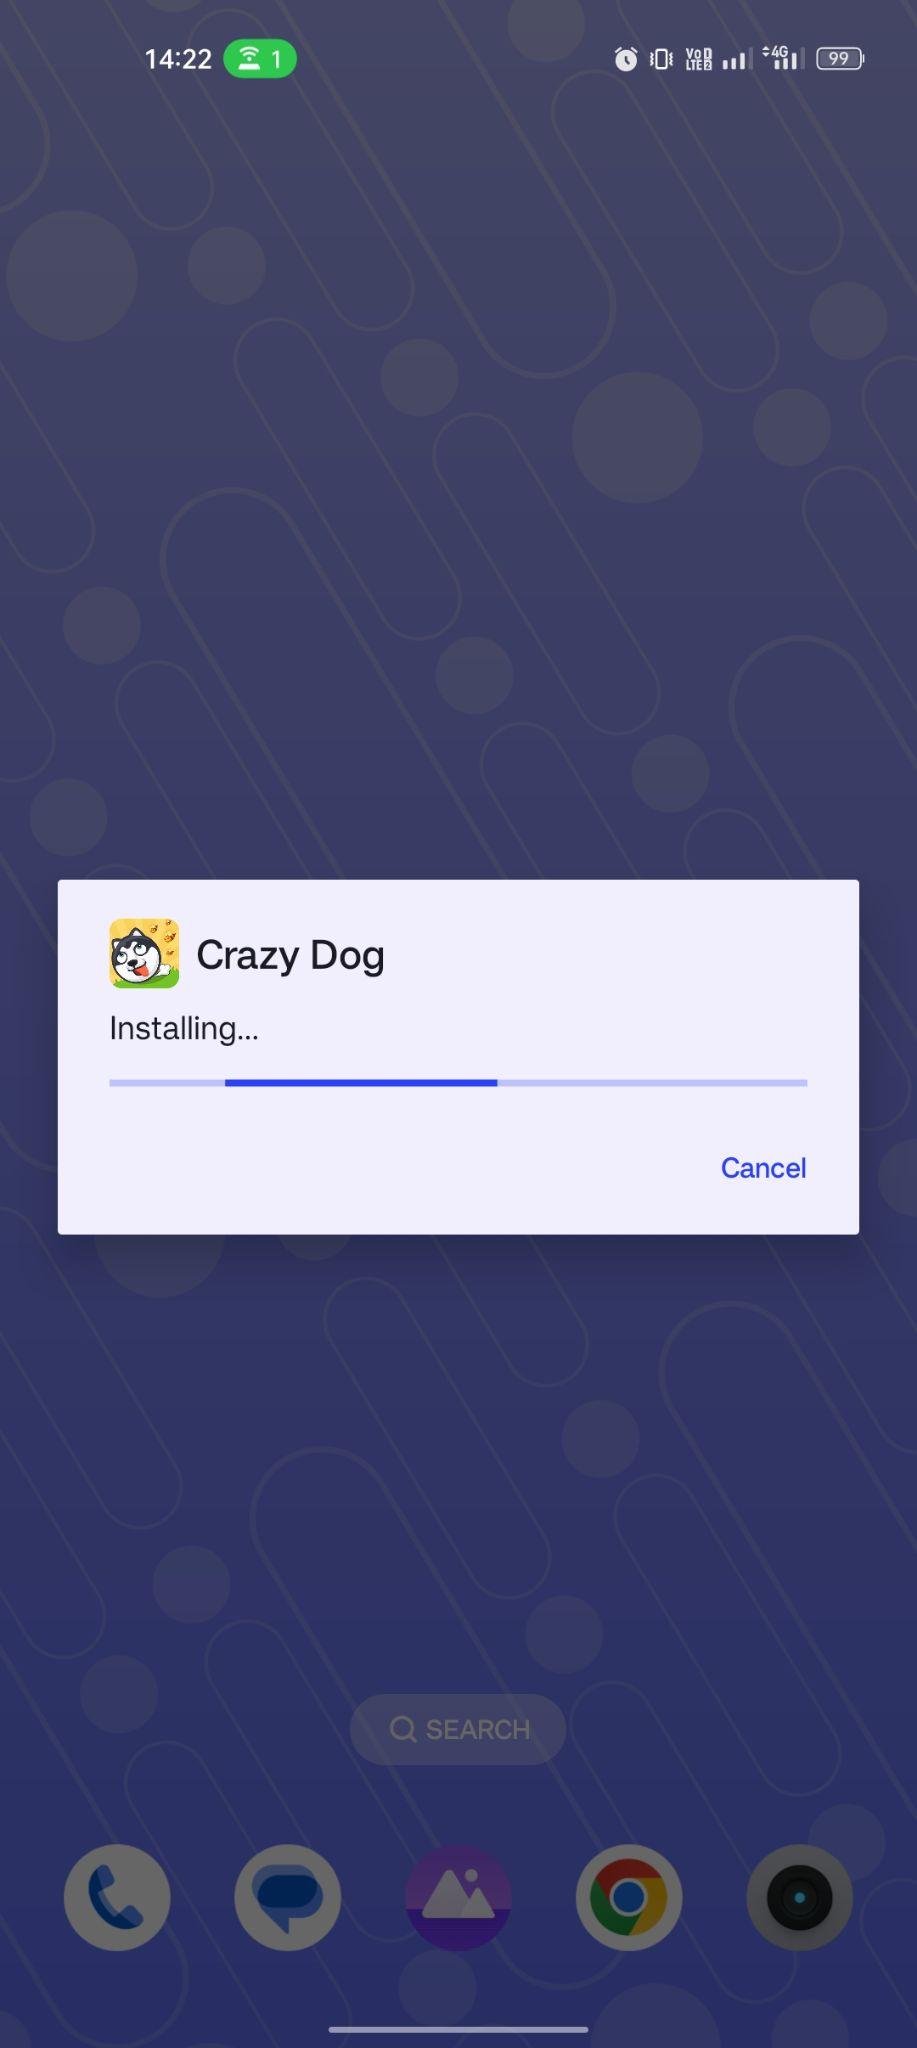 Crazy Dog apk installing